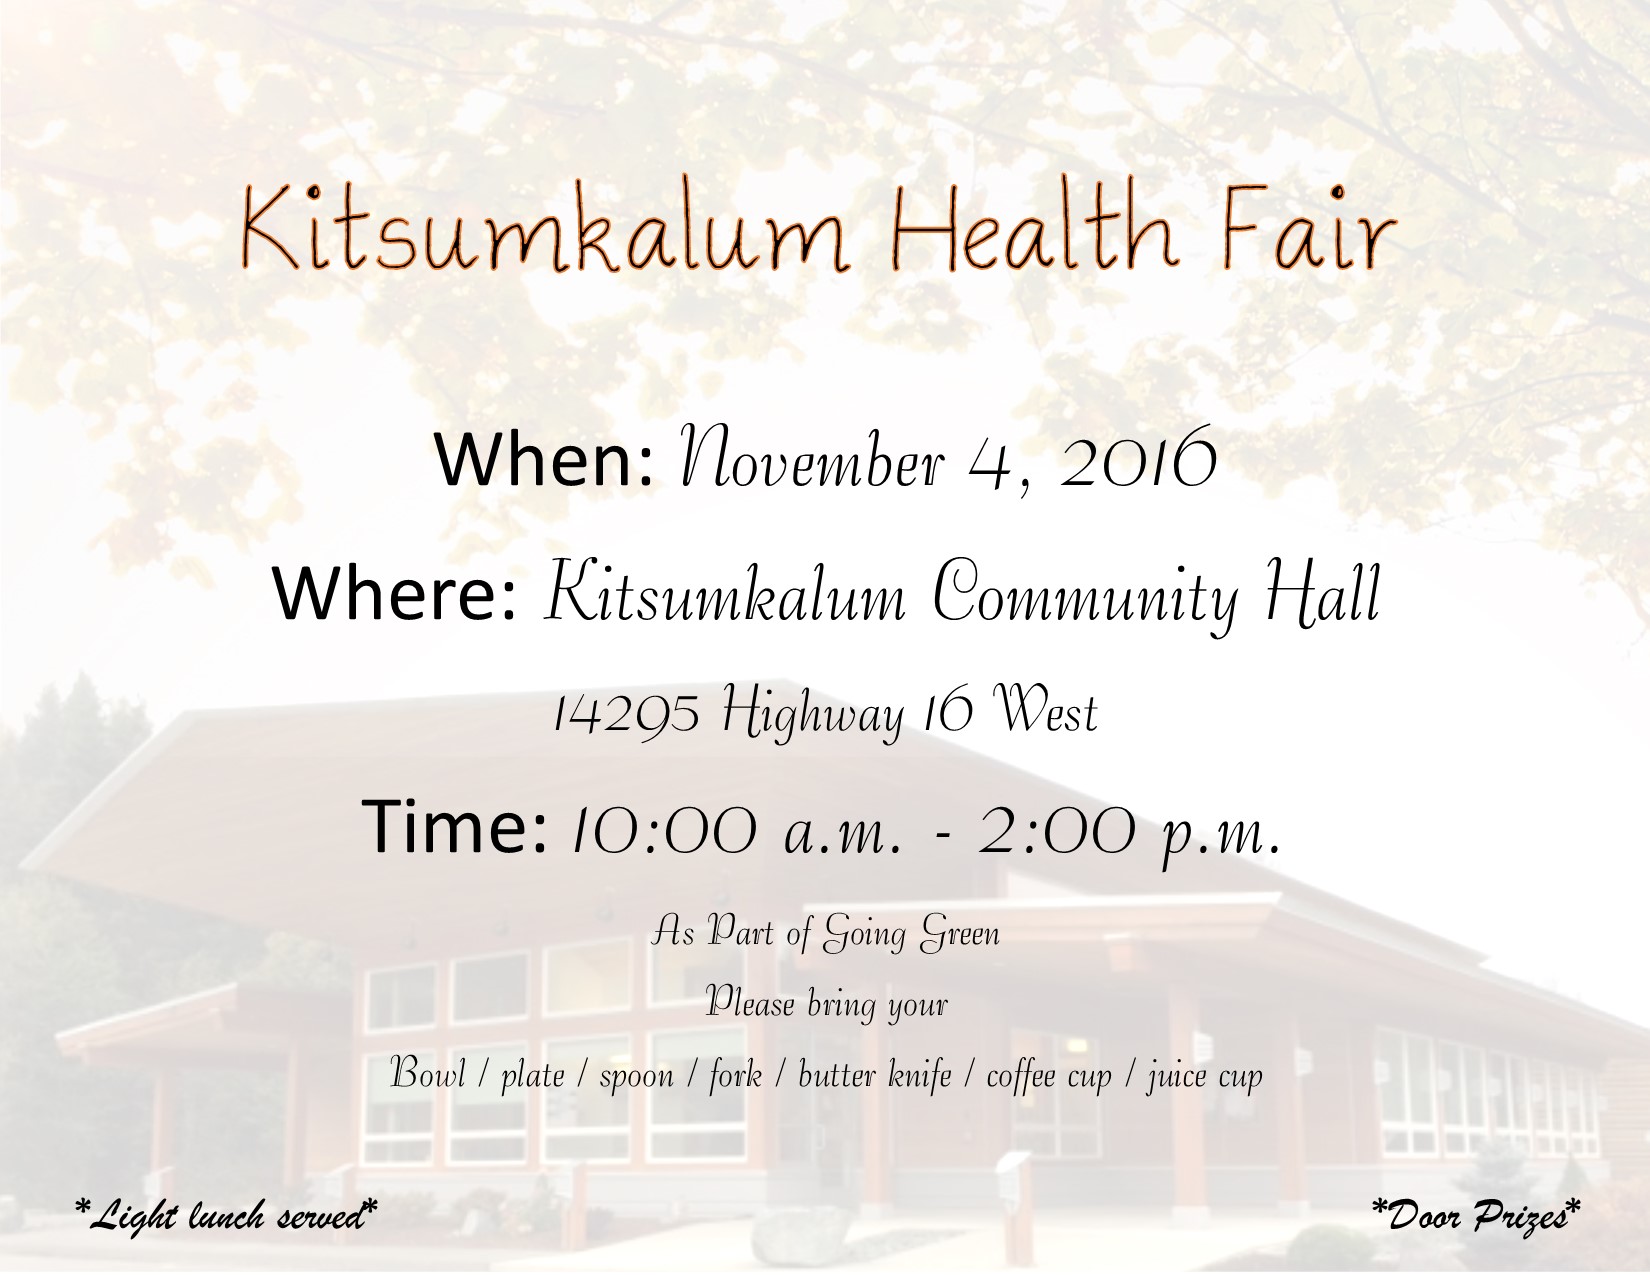 Kitsumkalum 2016 Health Fair